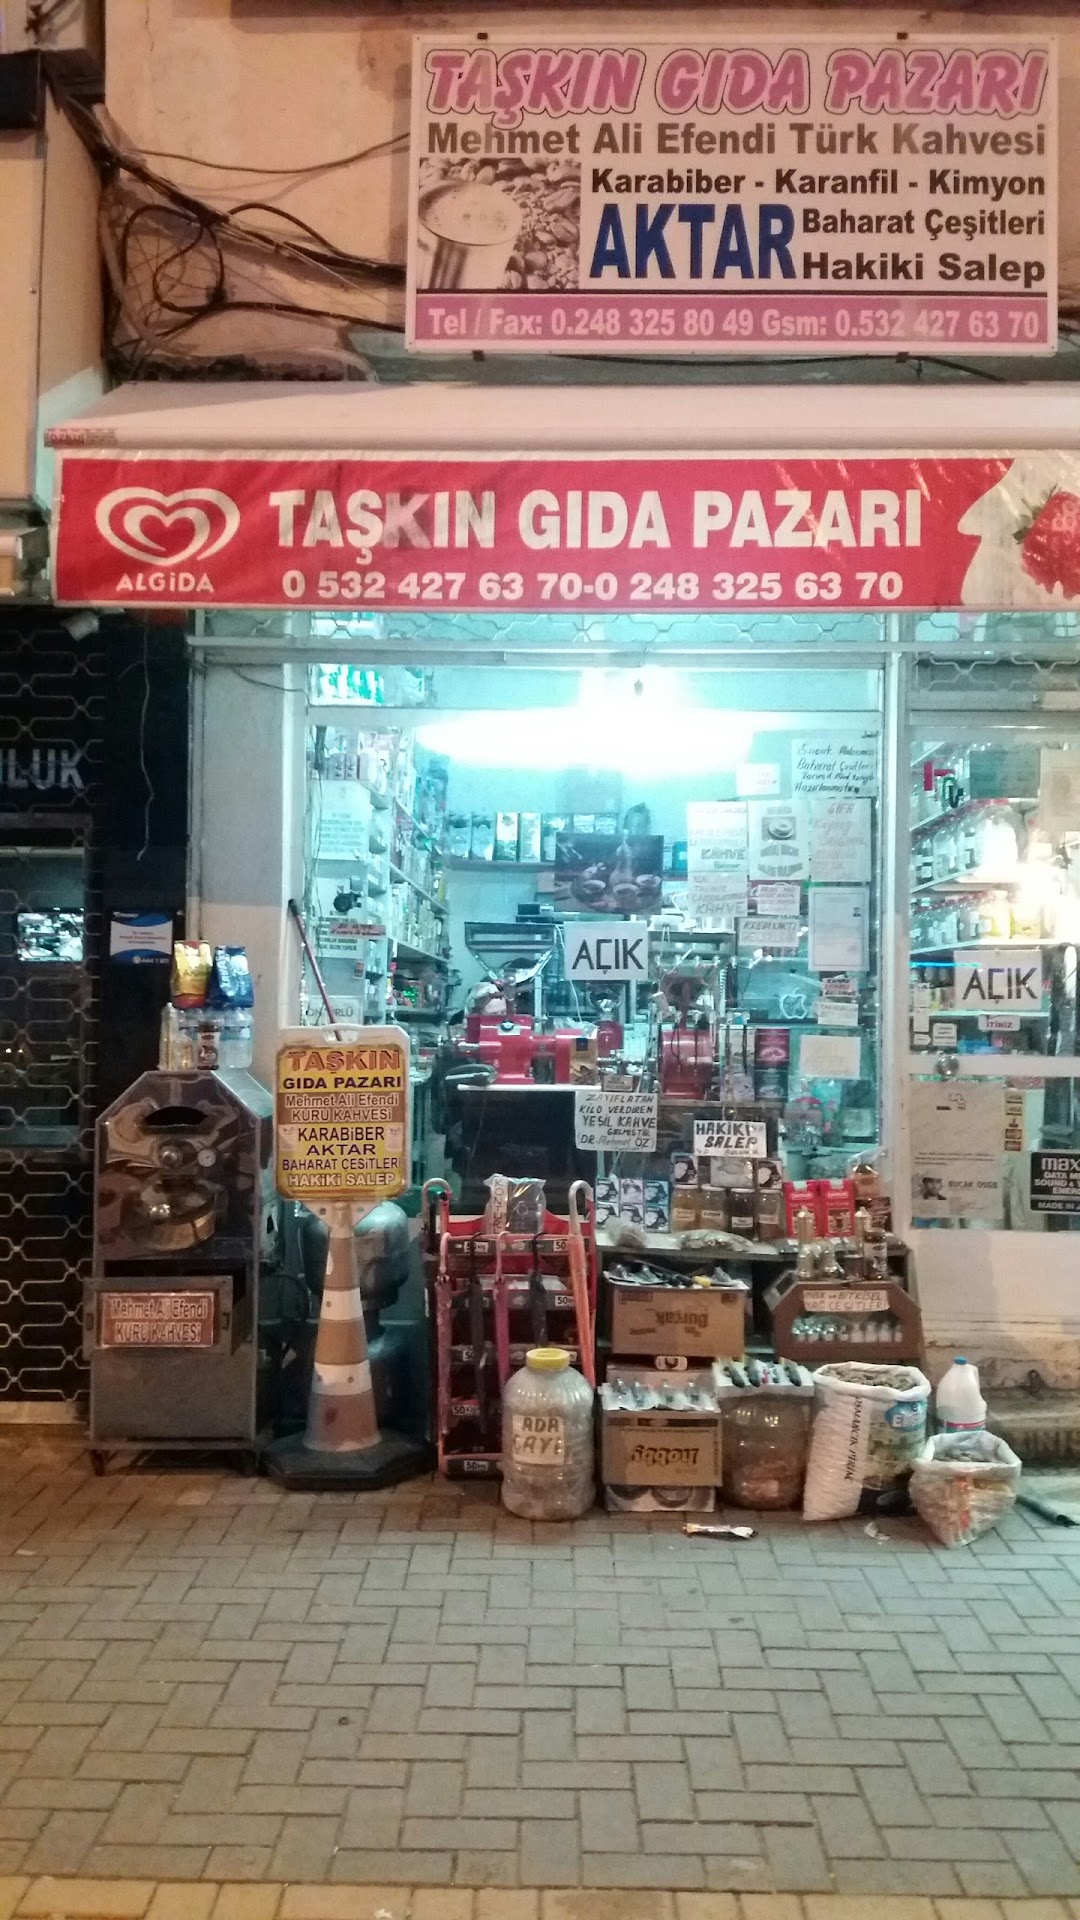 Takin Gida Pazari